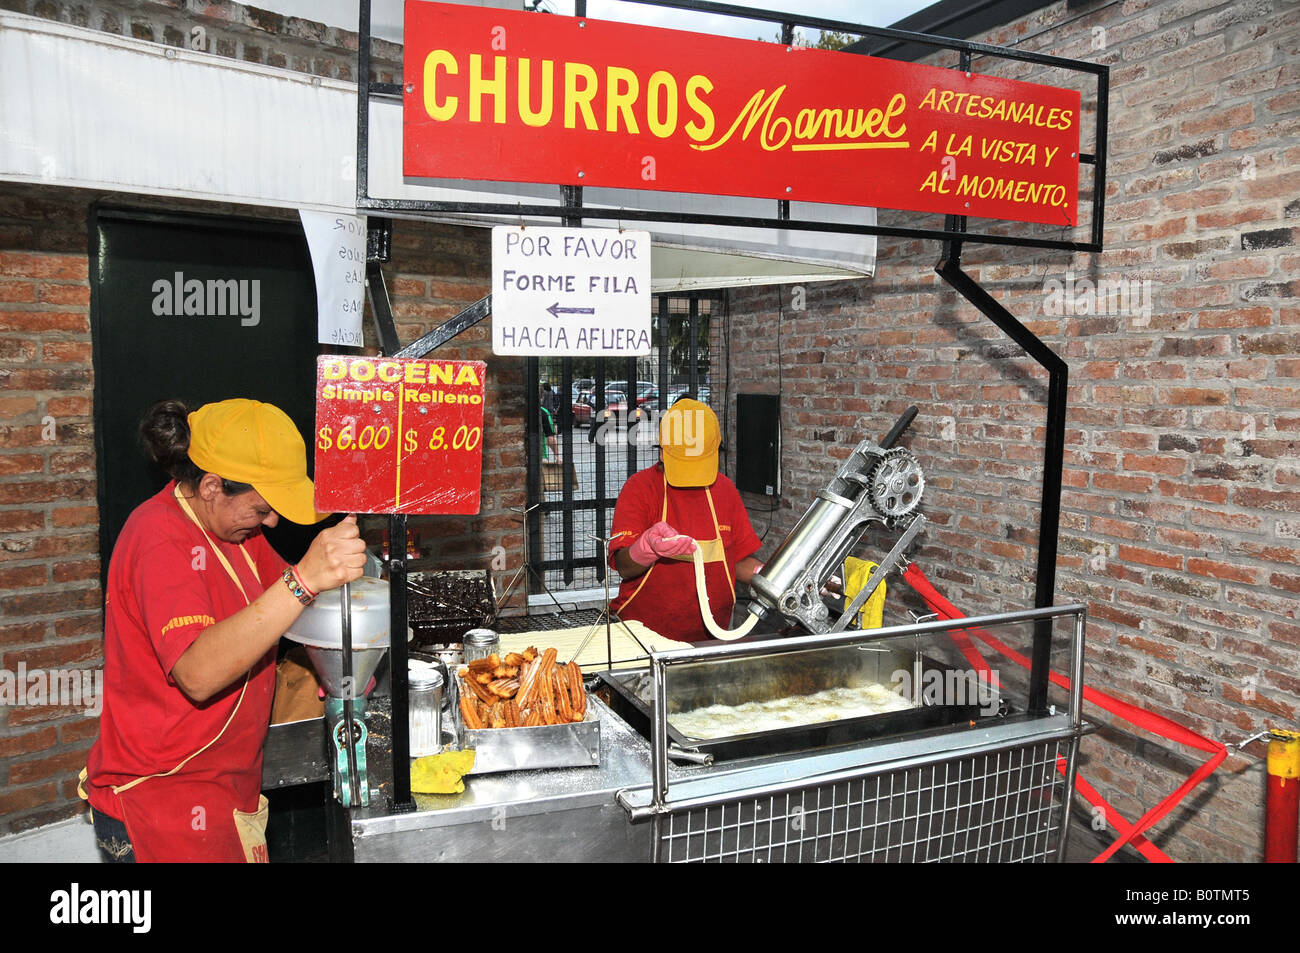 Churros (vendeur) frite, Puerto de Frutos marché, Tigre delta, Argentine Banque D'Images